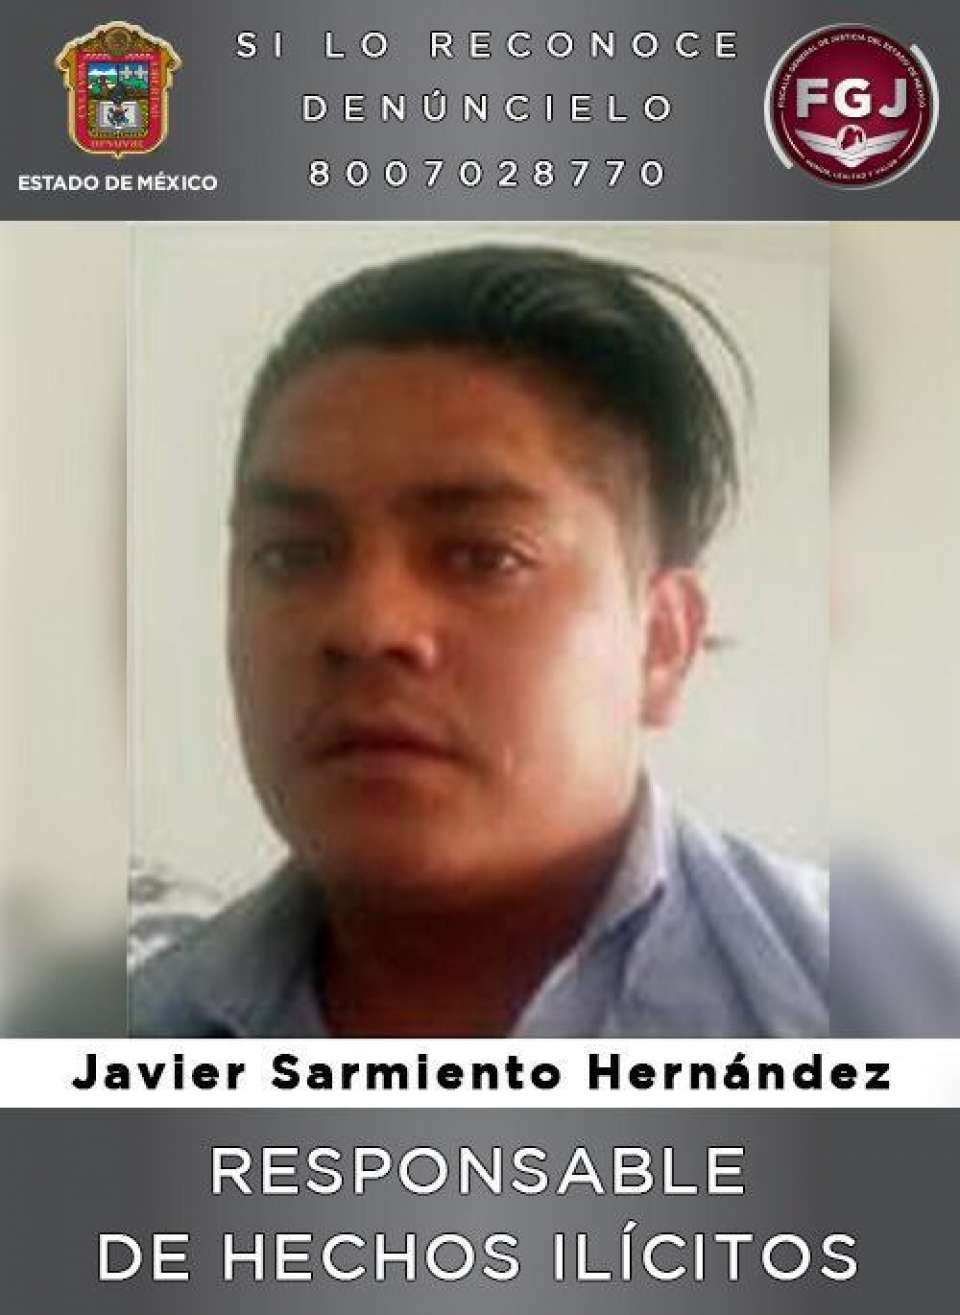 Condenan a 55 años de prisión a individuo acusado de un homicidio en Chimalhuacán